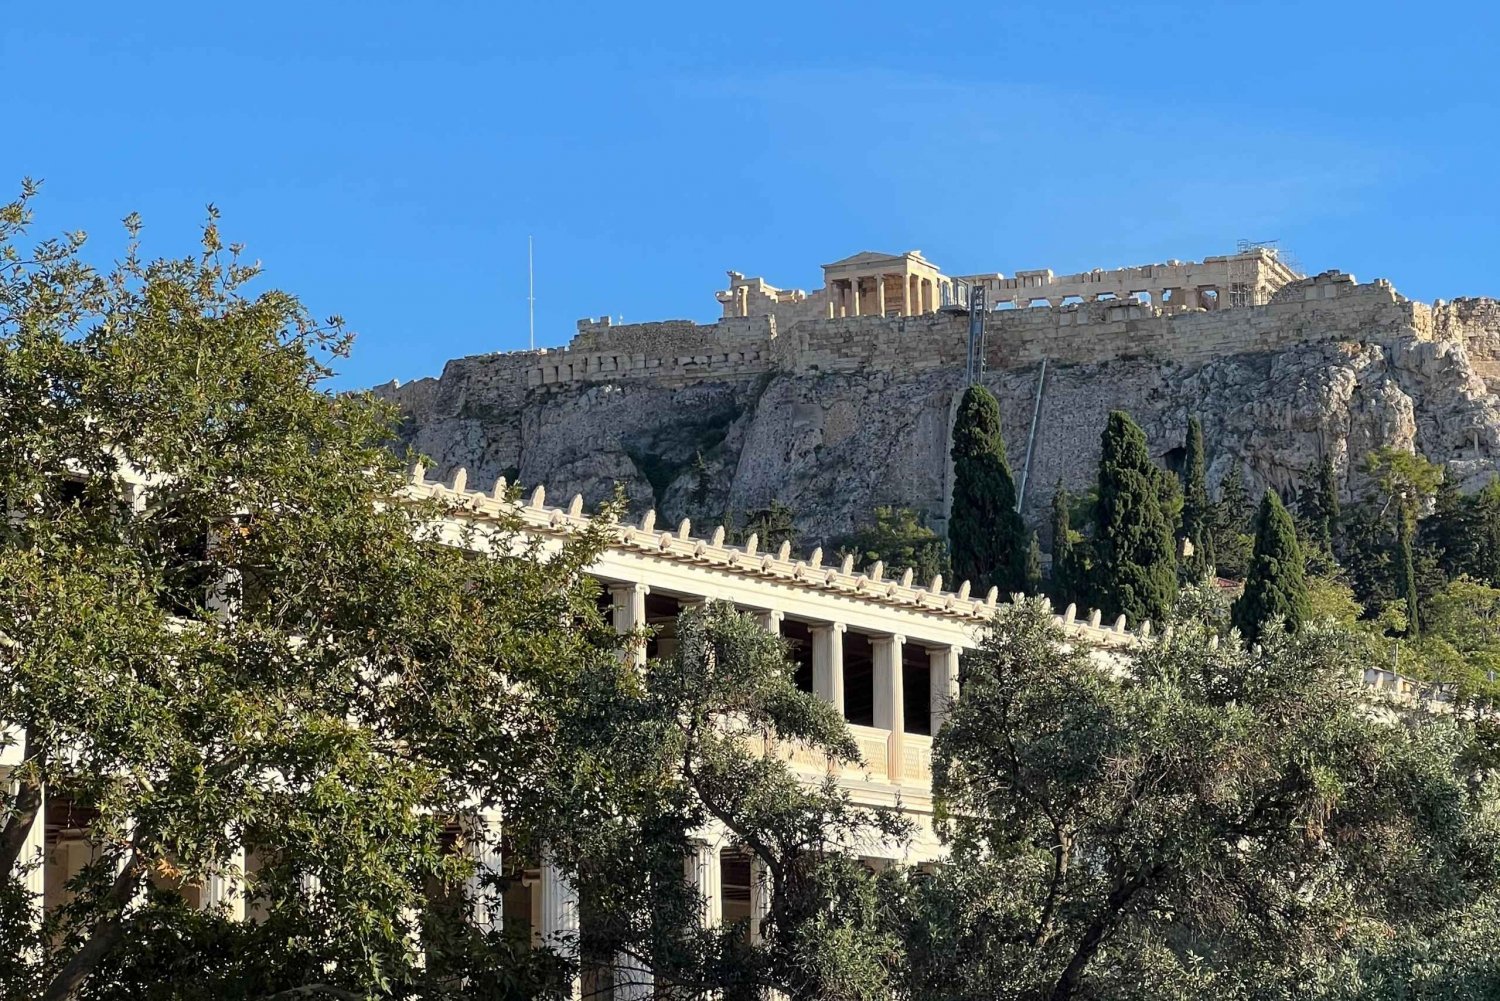 Otrolig vandring i Aten med dolda pärlor